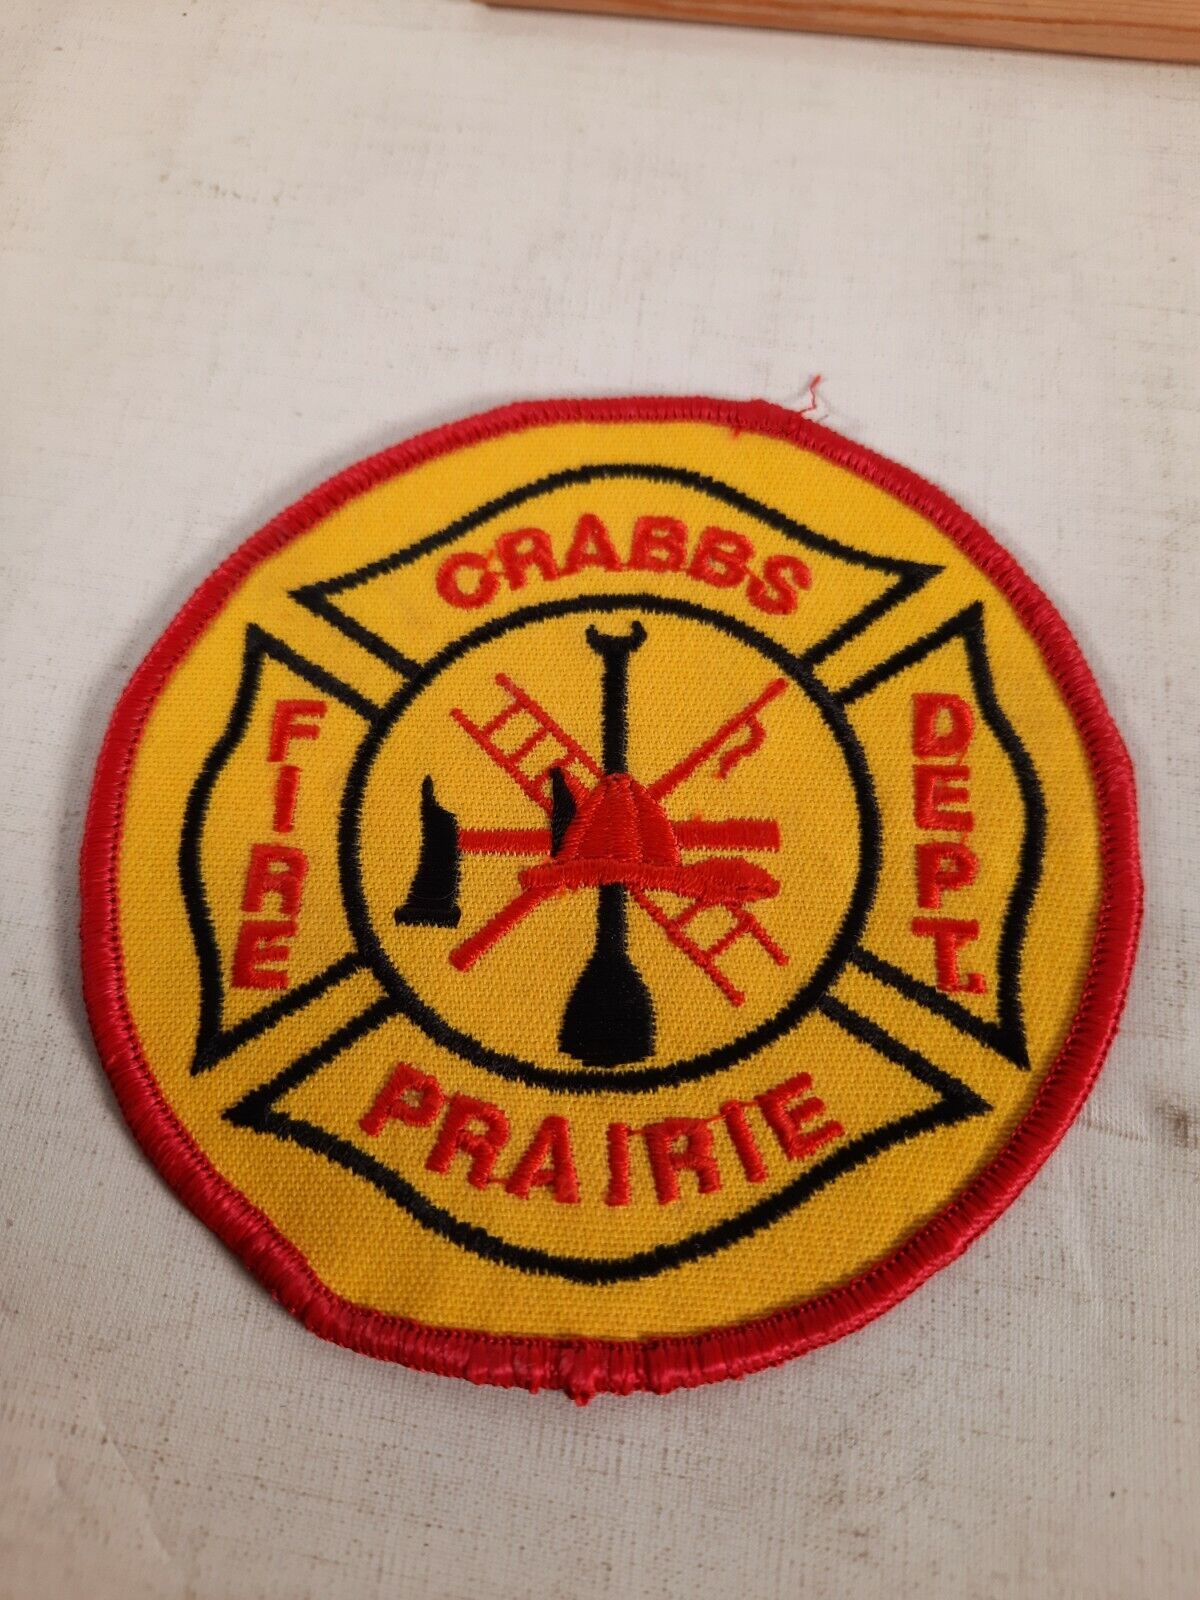 Crabbs prairie  FIRE DEPT PATCH